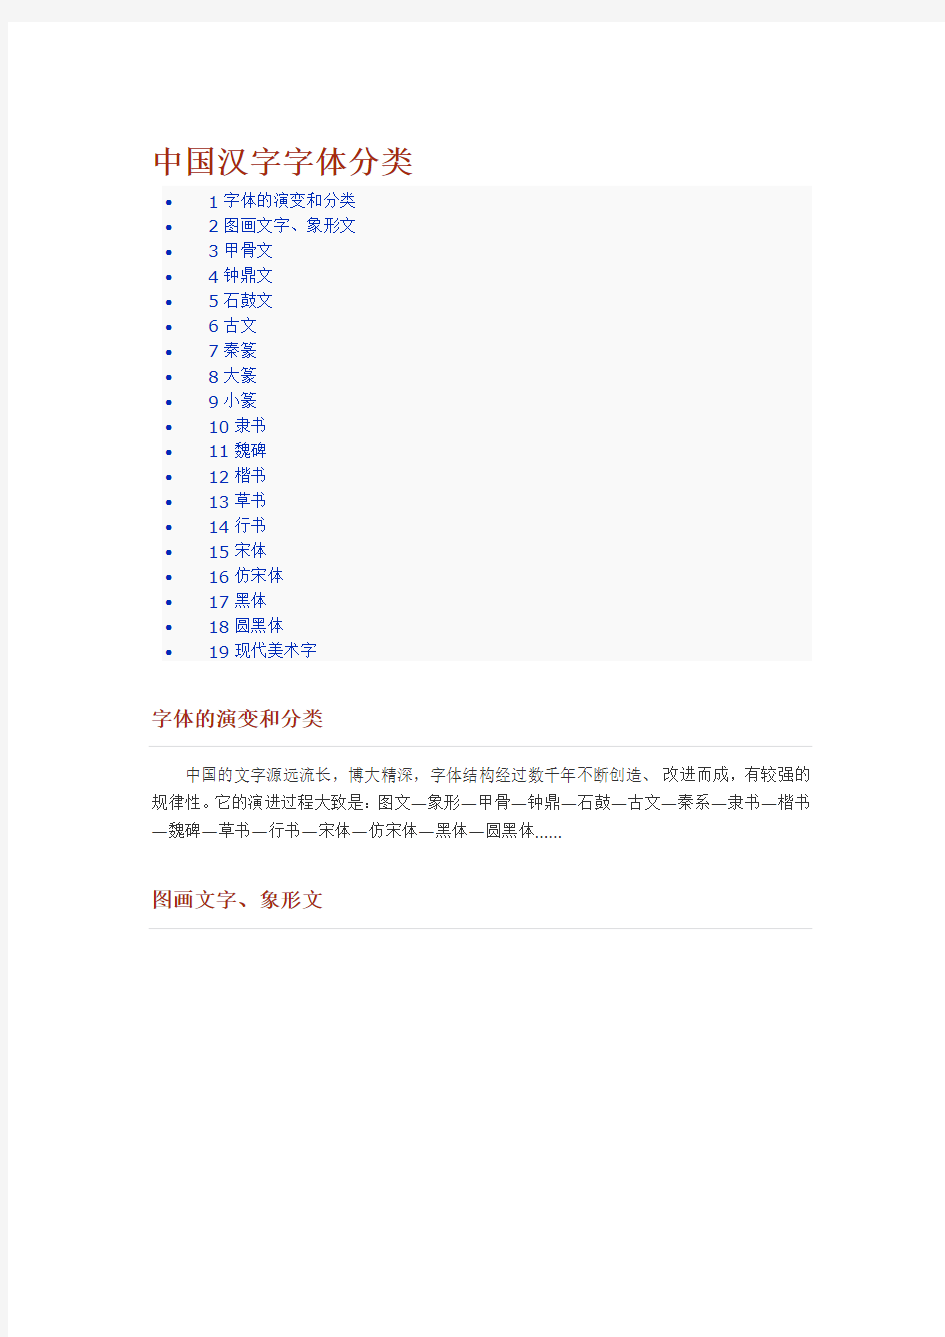 中国汉字字体分类大全